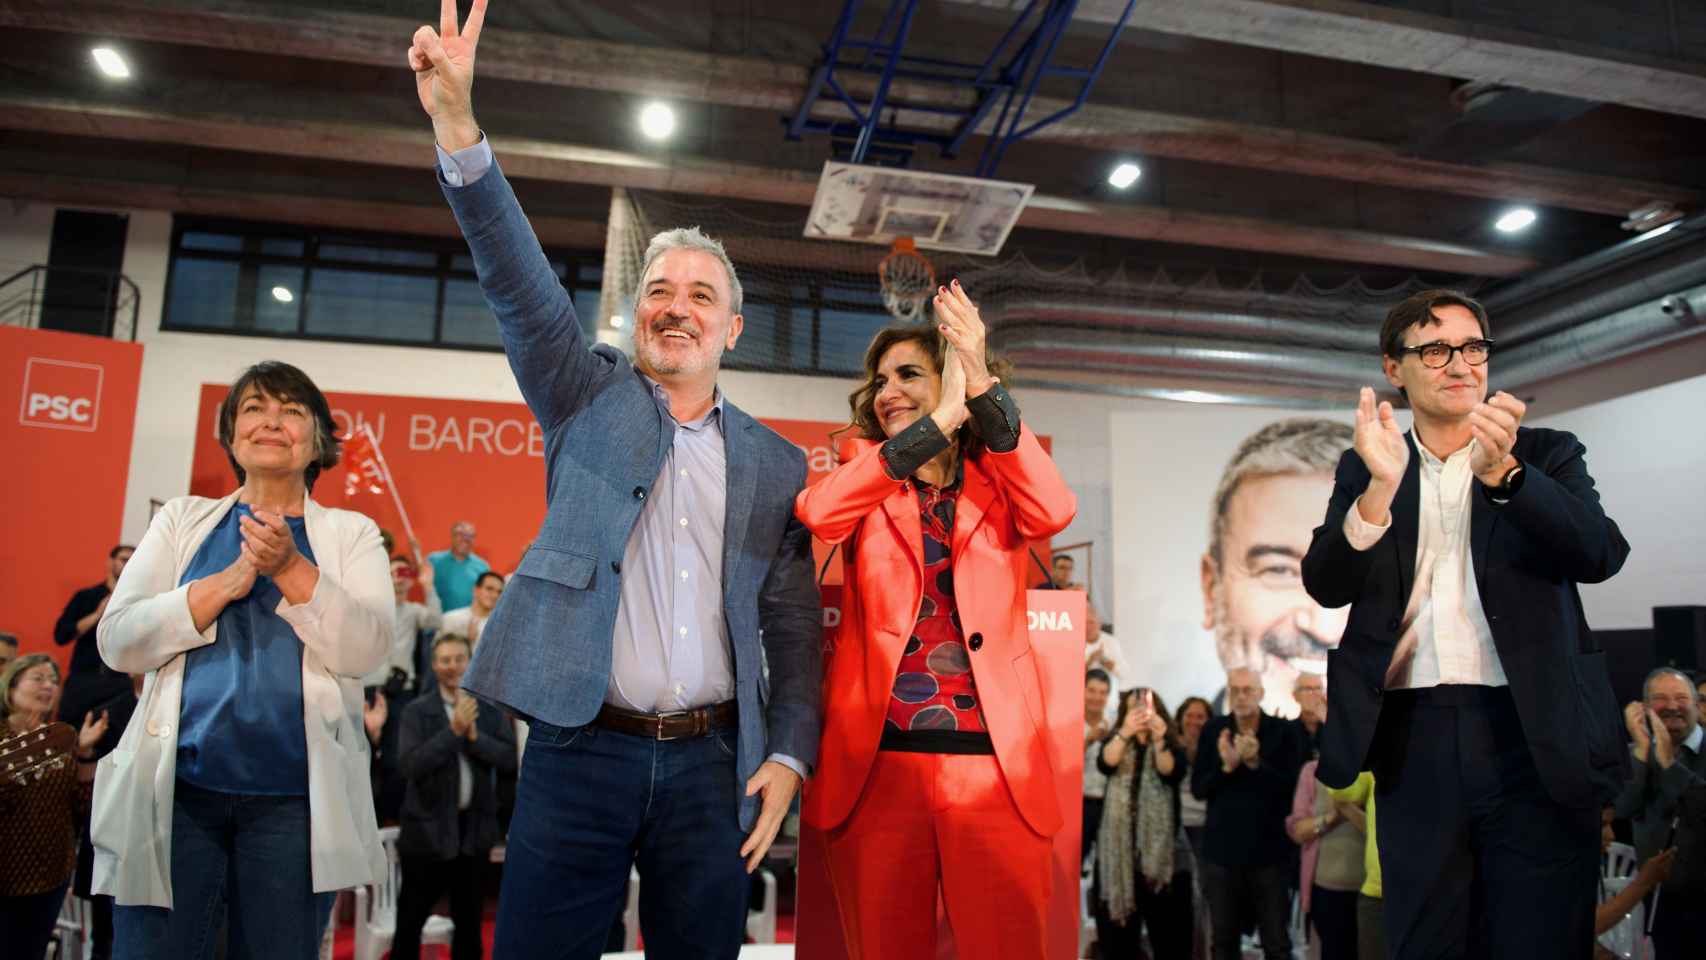 Rosa Alarcón, Jaume Collboni, María Jesús Montero y Salvador Illa, en el acto de arranque de la campaña electoral del PSC / PSC